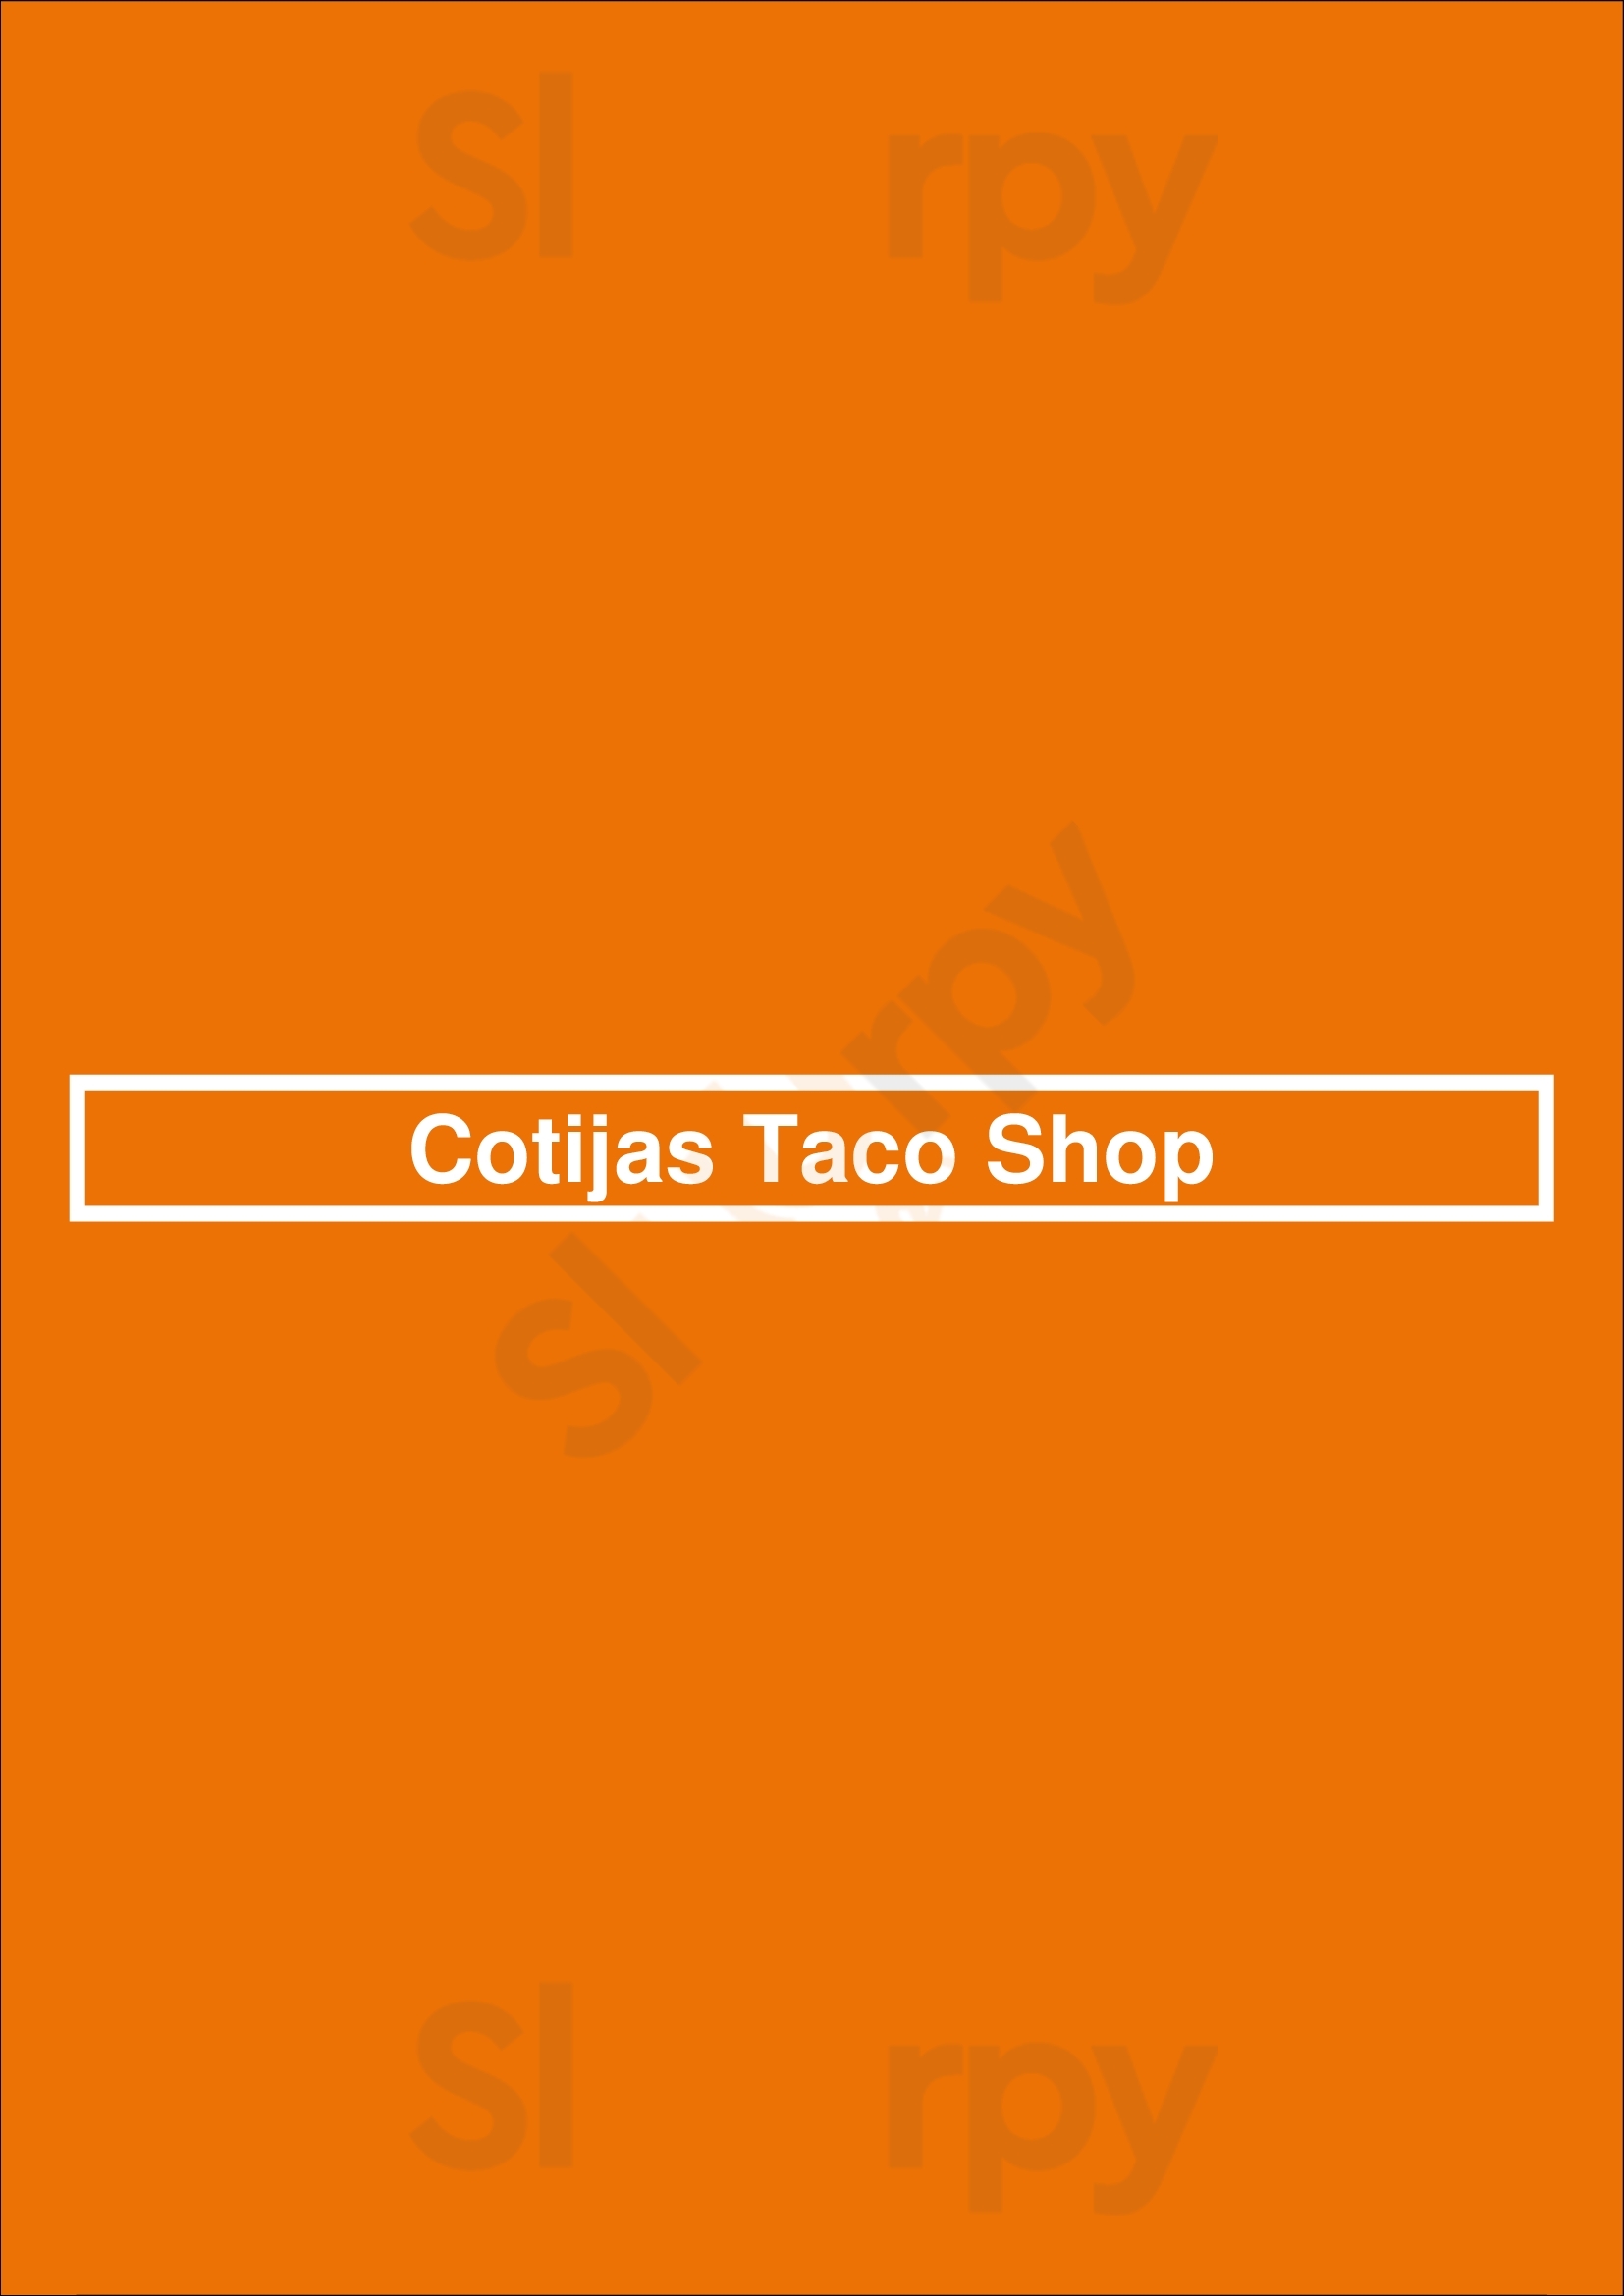 Cotijas Taco Shop San Diego Menu - 1